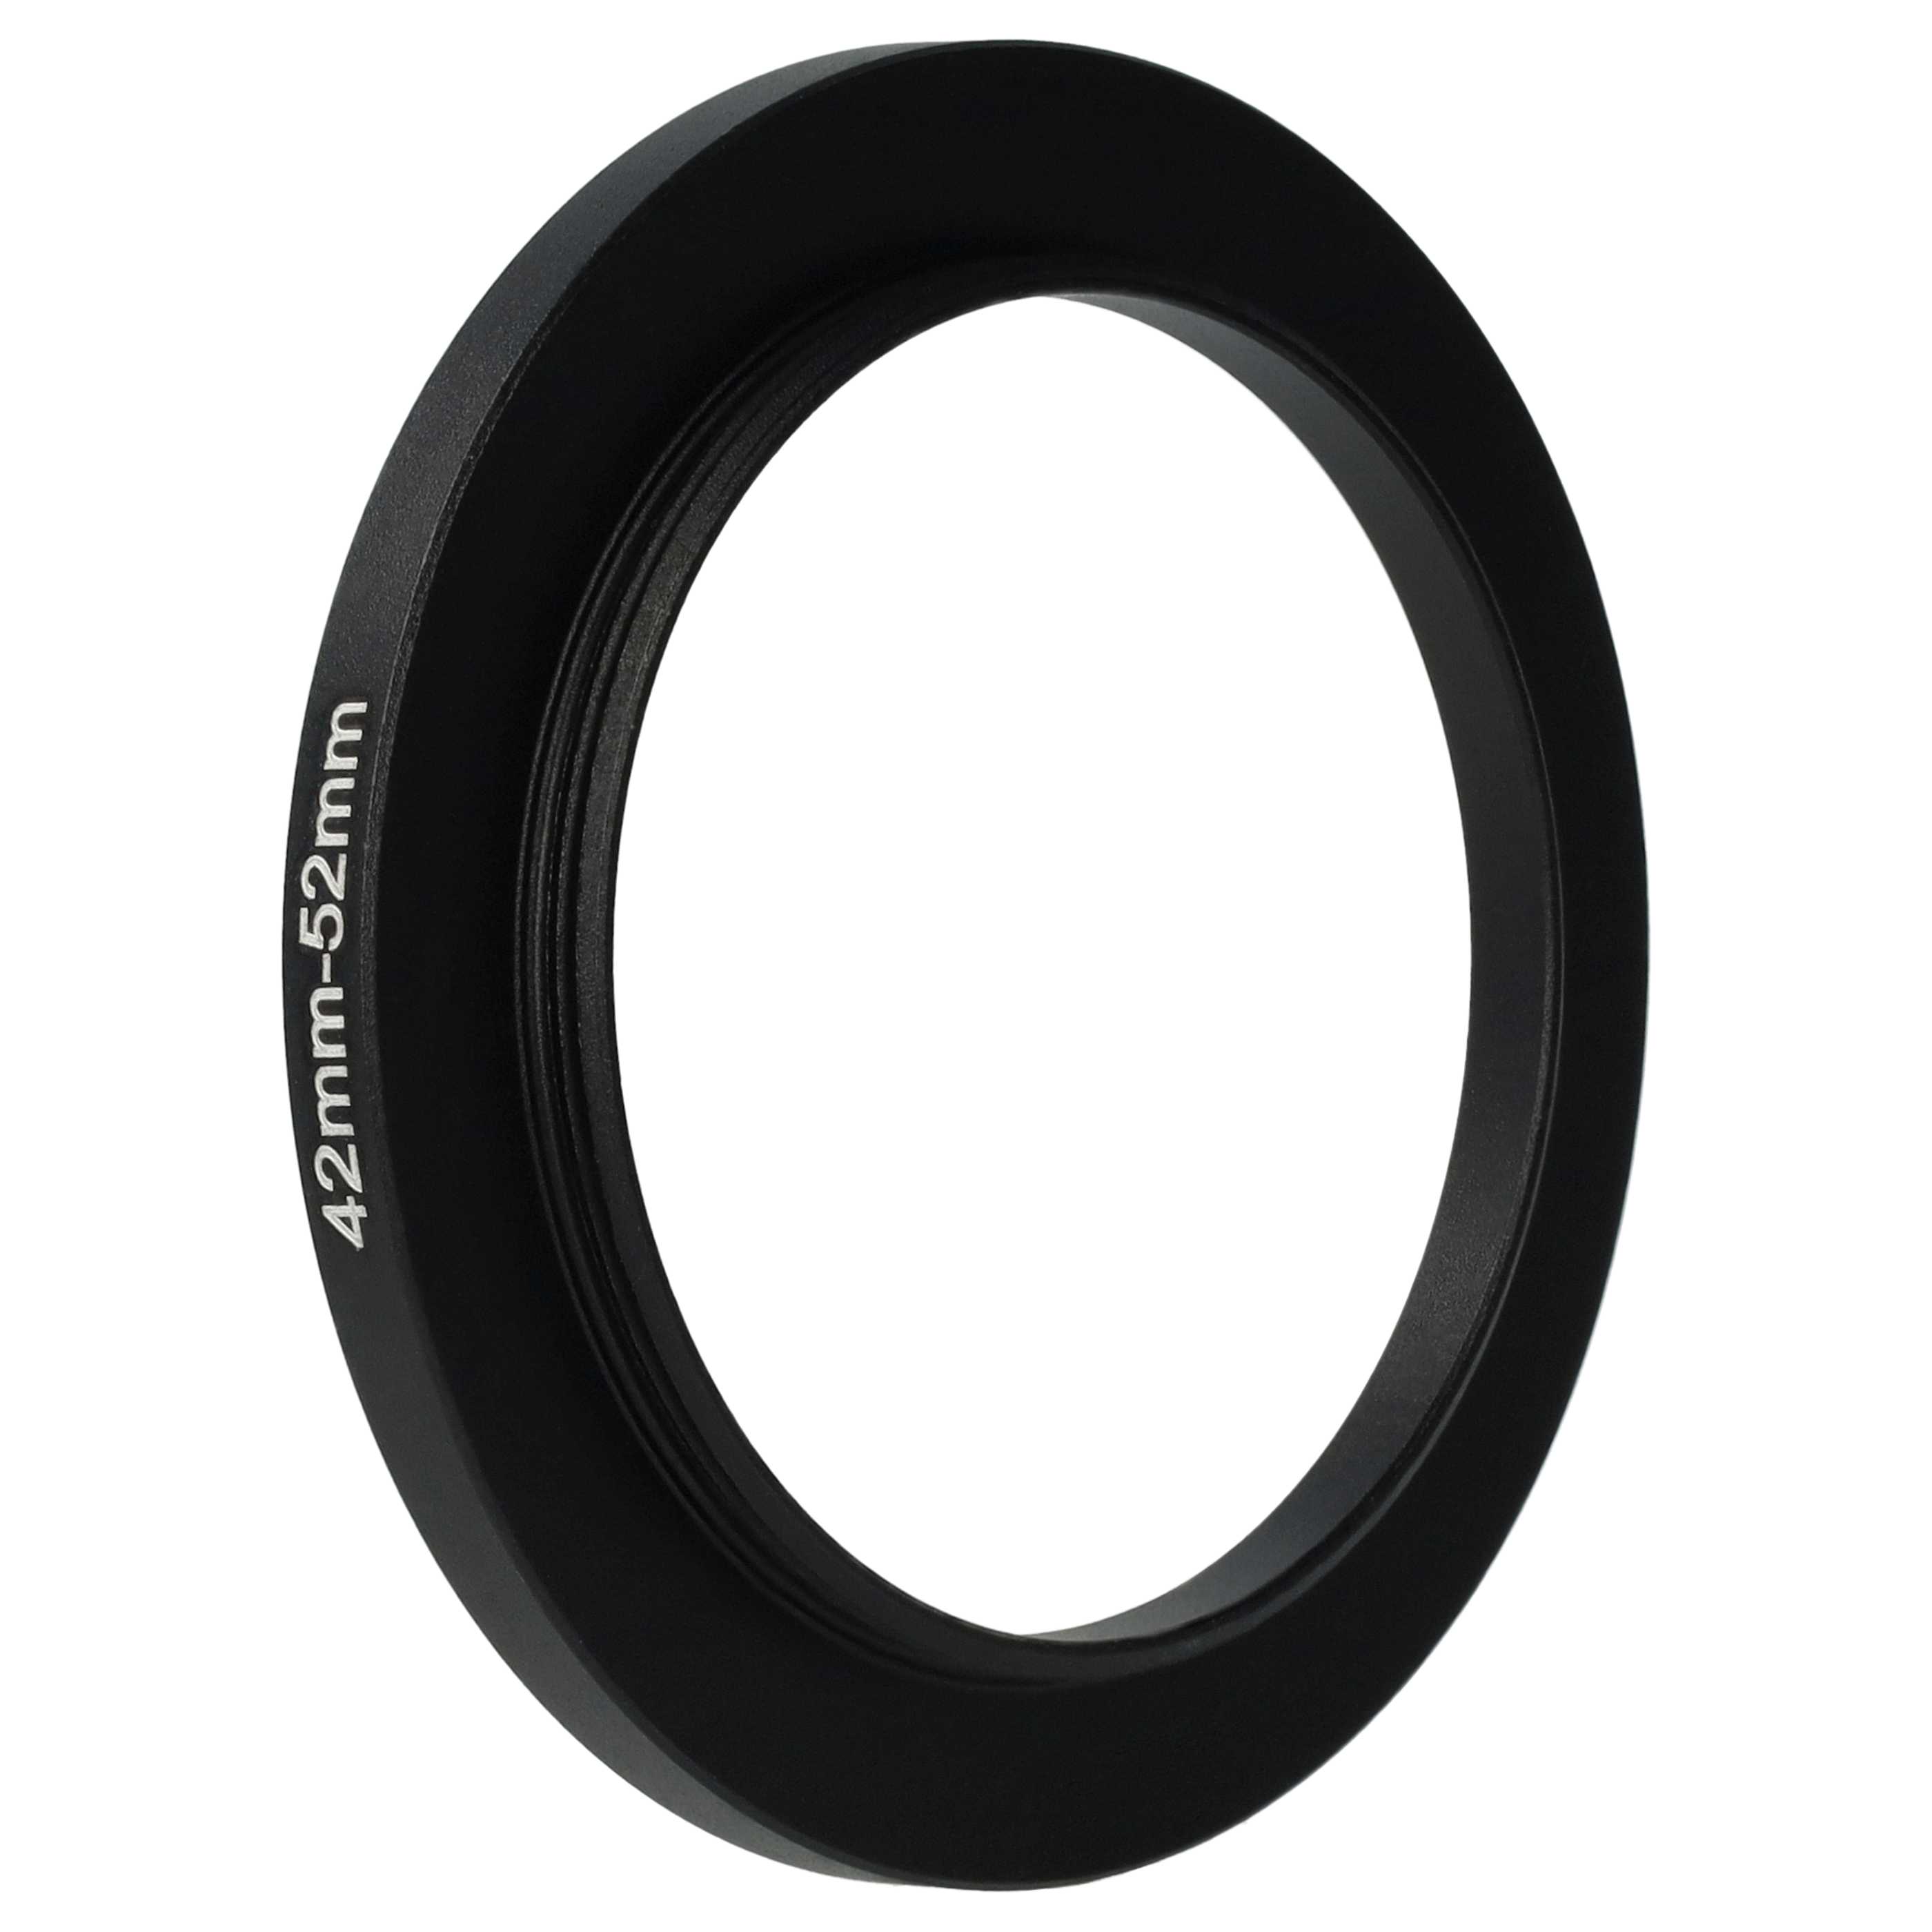 Step-Up-Ring Adapter 42 mm auf 52 mm passend für diverse Kamera-Objektive - Filteradapter